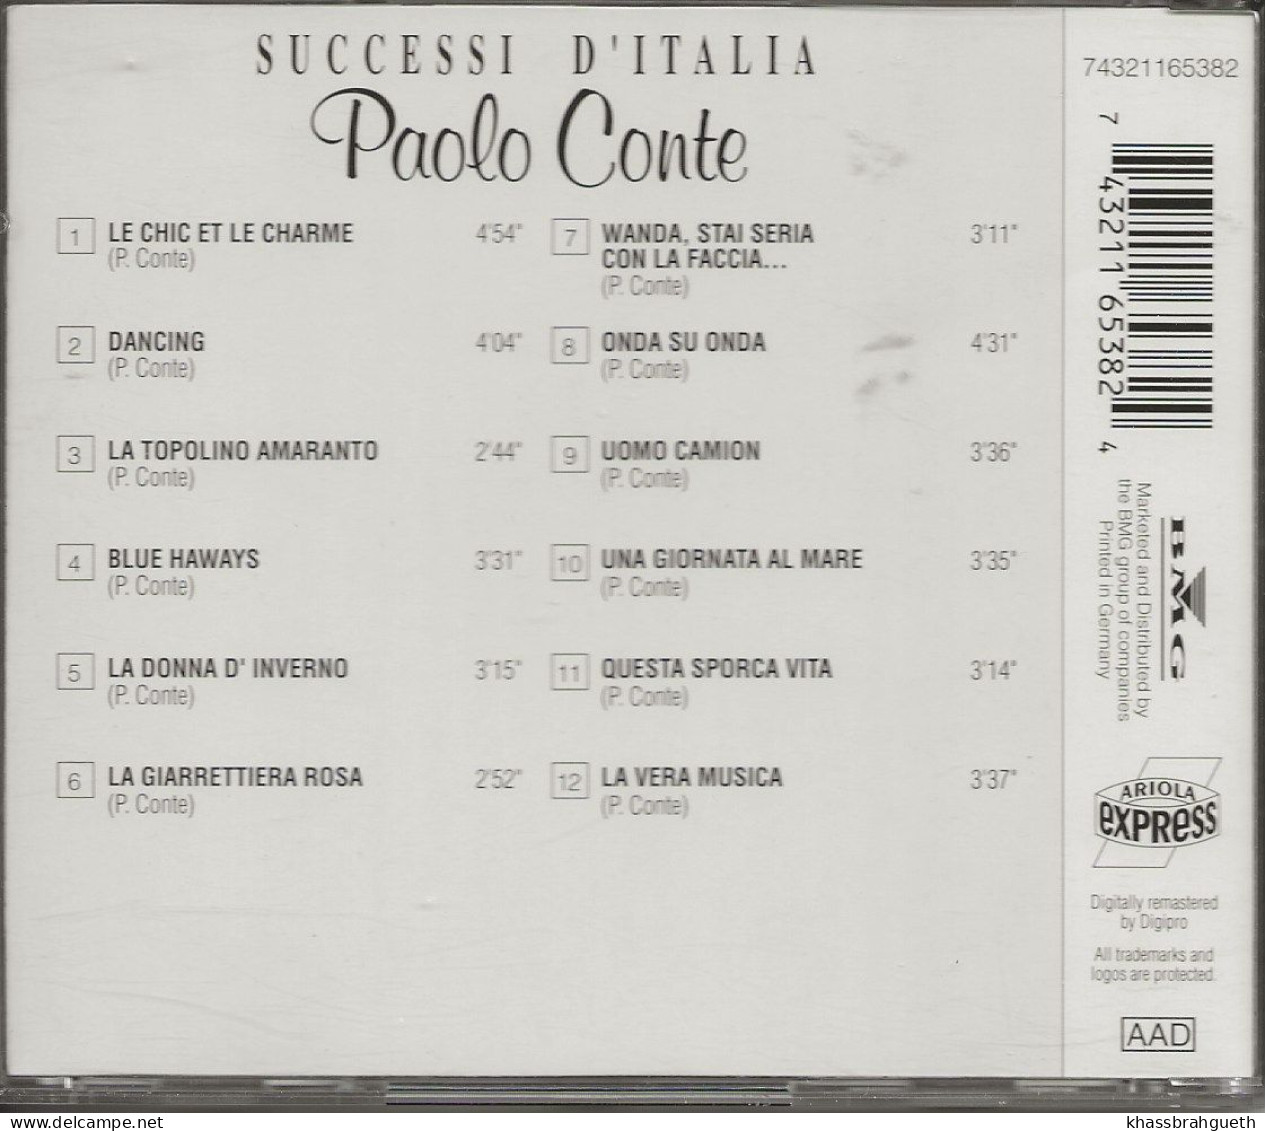 PAOLO CONTE - SUCCESSI D'ITALIA - ARIOLA (1993) (CD ALBUM) - Autres - Musique Italienne